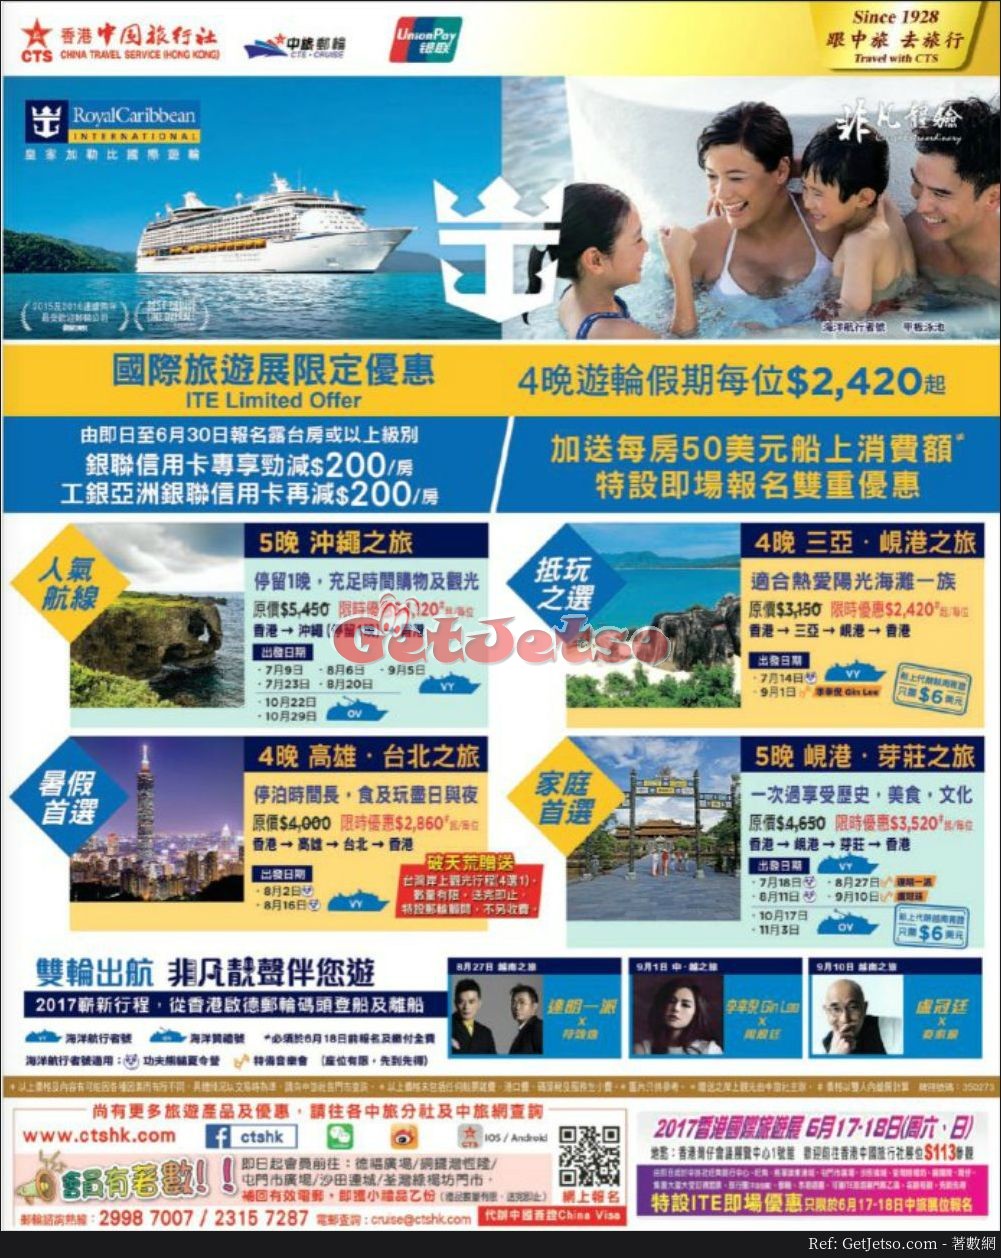 中國旅行社國際旅遊展會場優惠(17年6月17-18日)圖片2